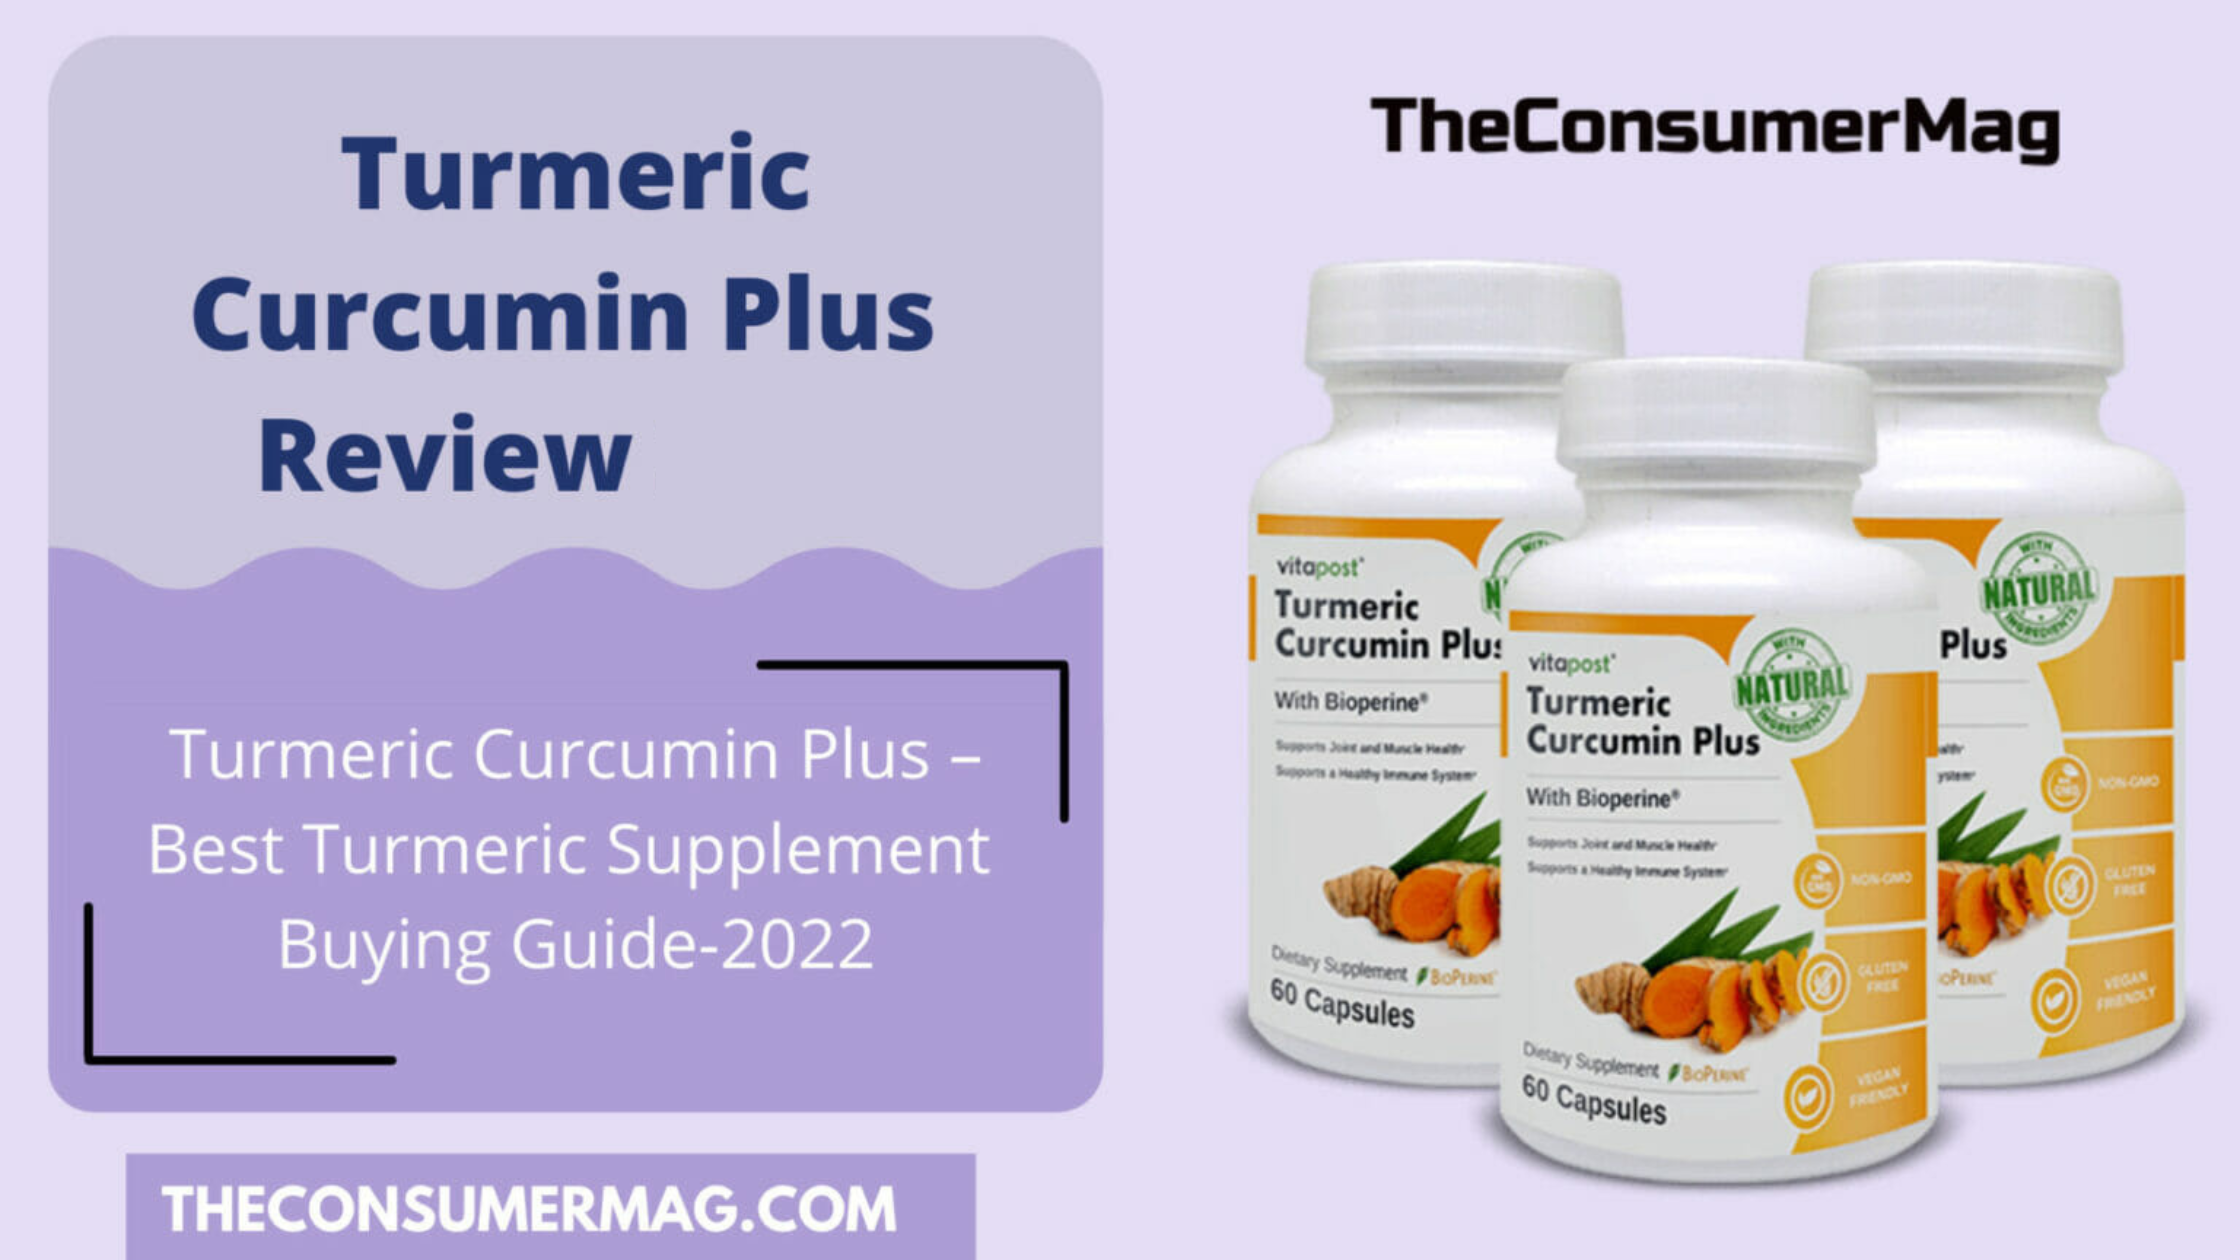 Turmeric Curcumin Plus featured image